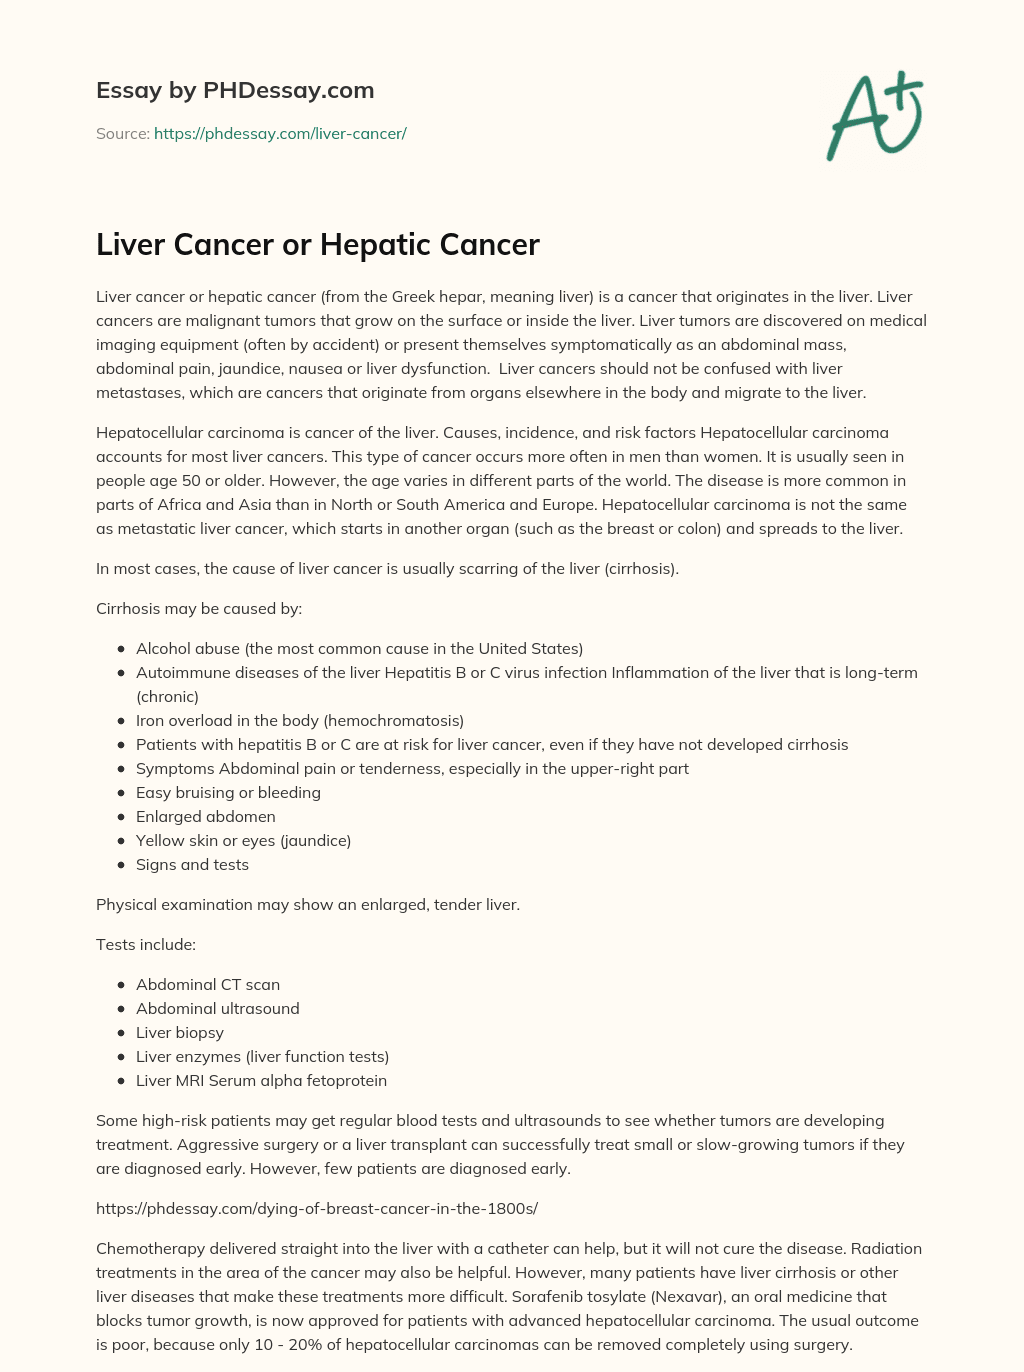 essay on liver cancer